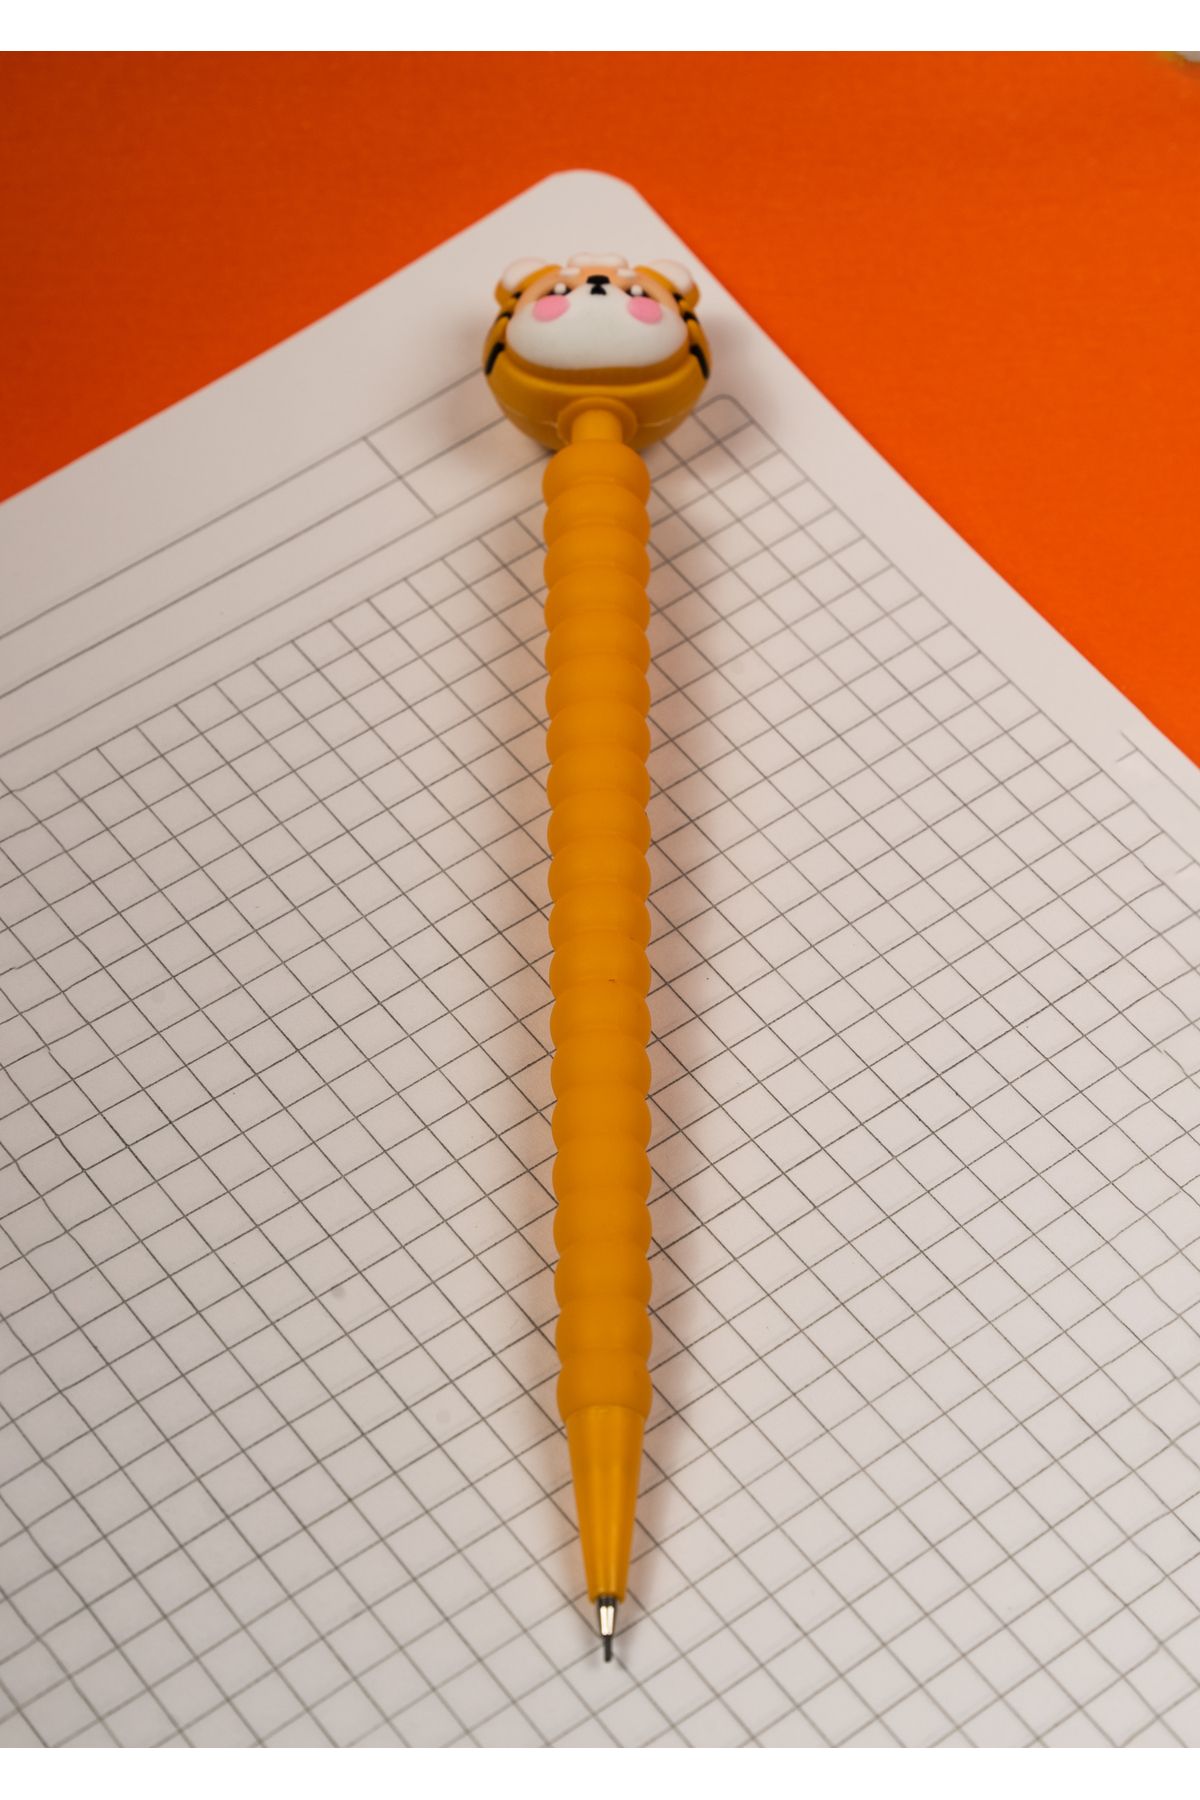 PENEX Kedi Başlıklı Uçlu Kalem 0.7 mm